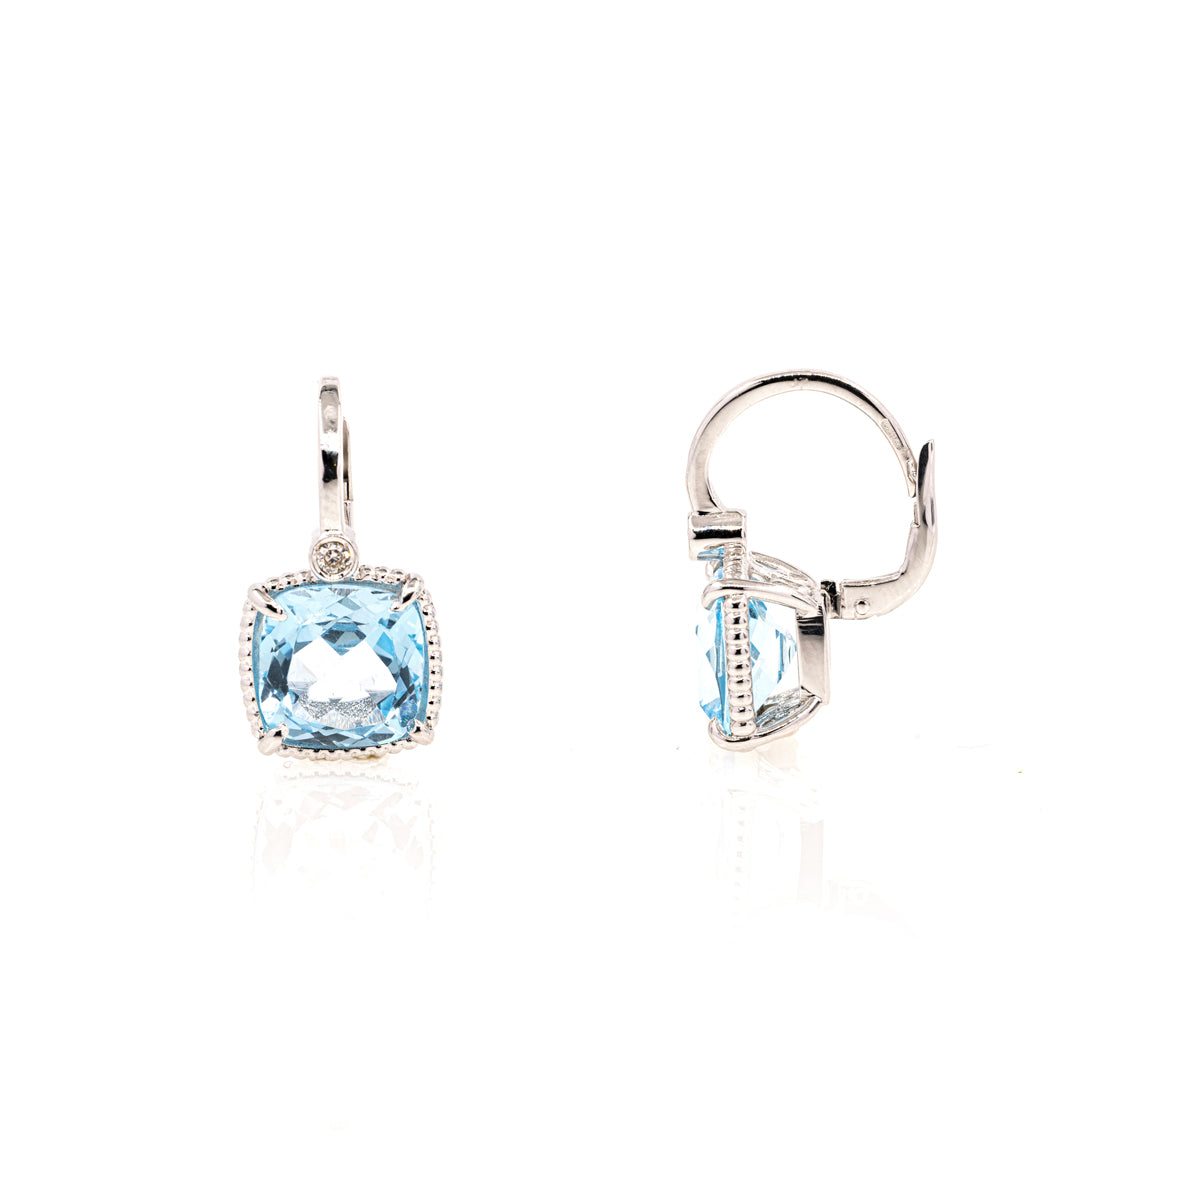 Diana 401 blue topaz earrings